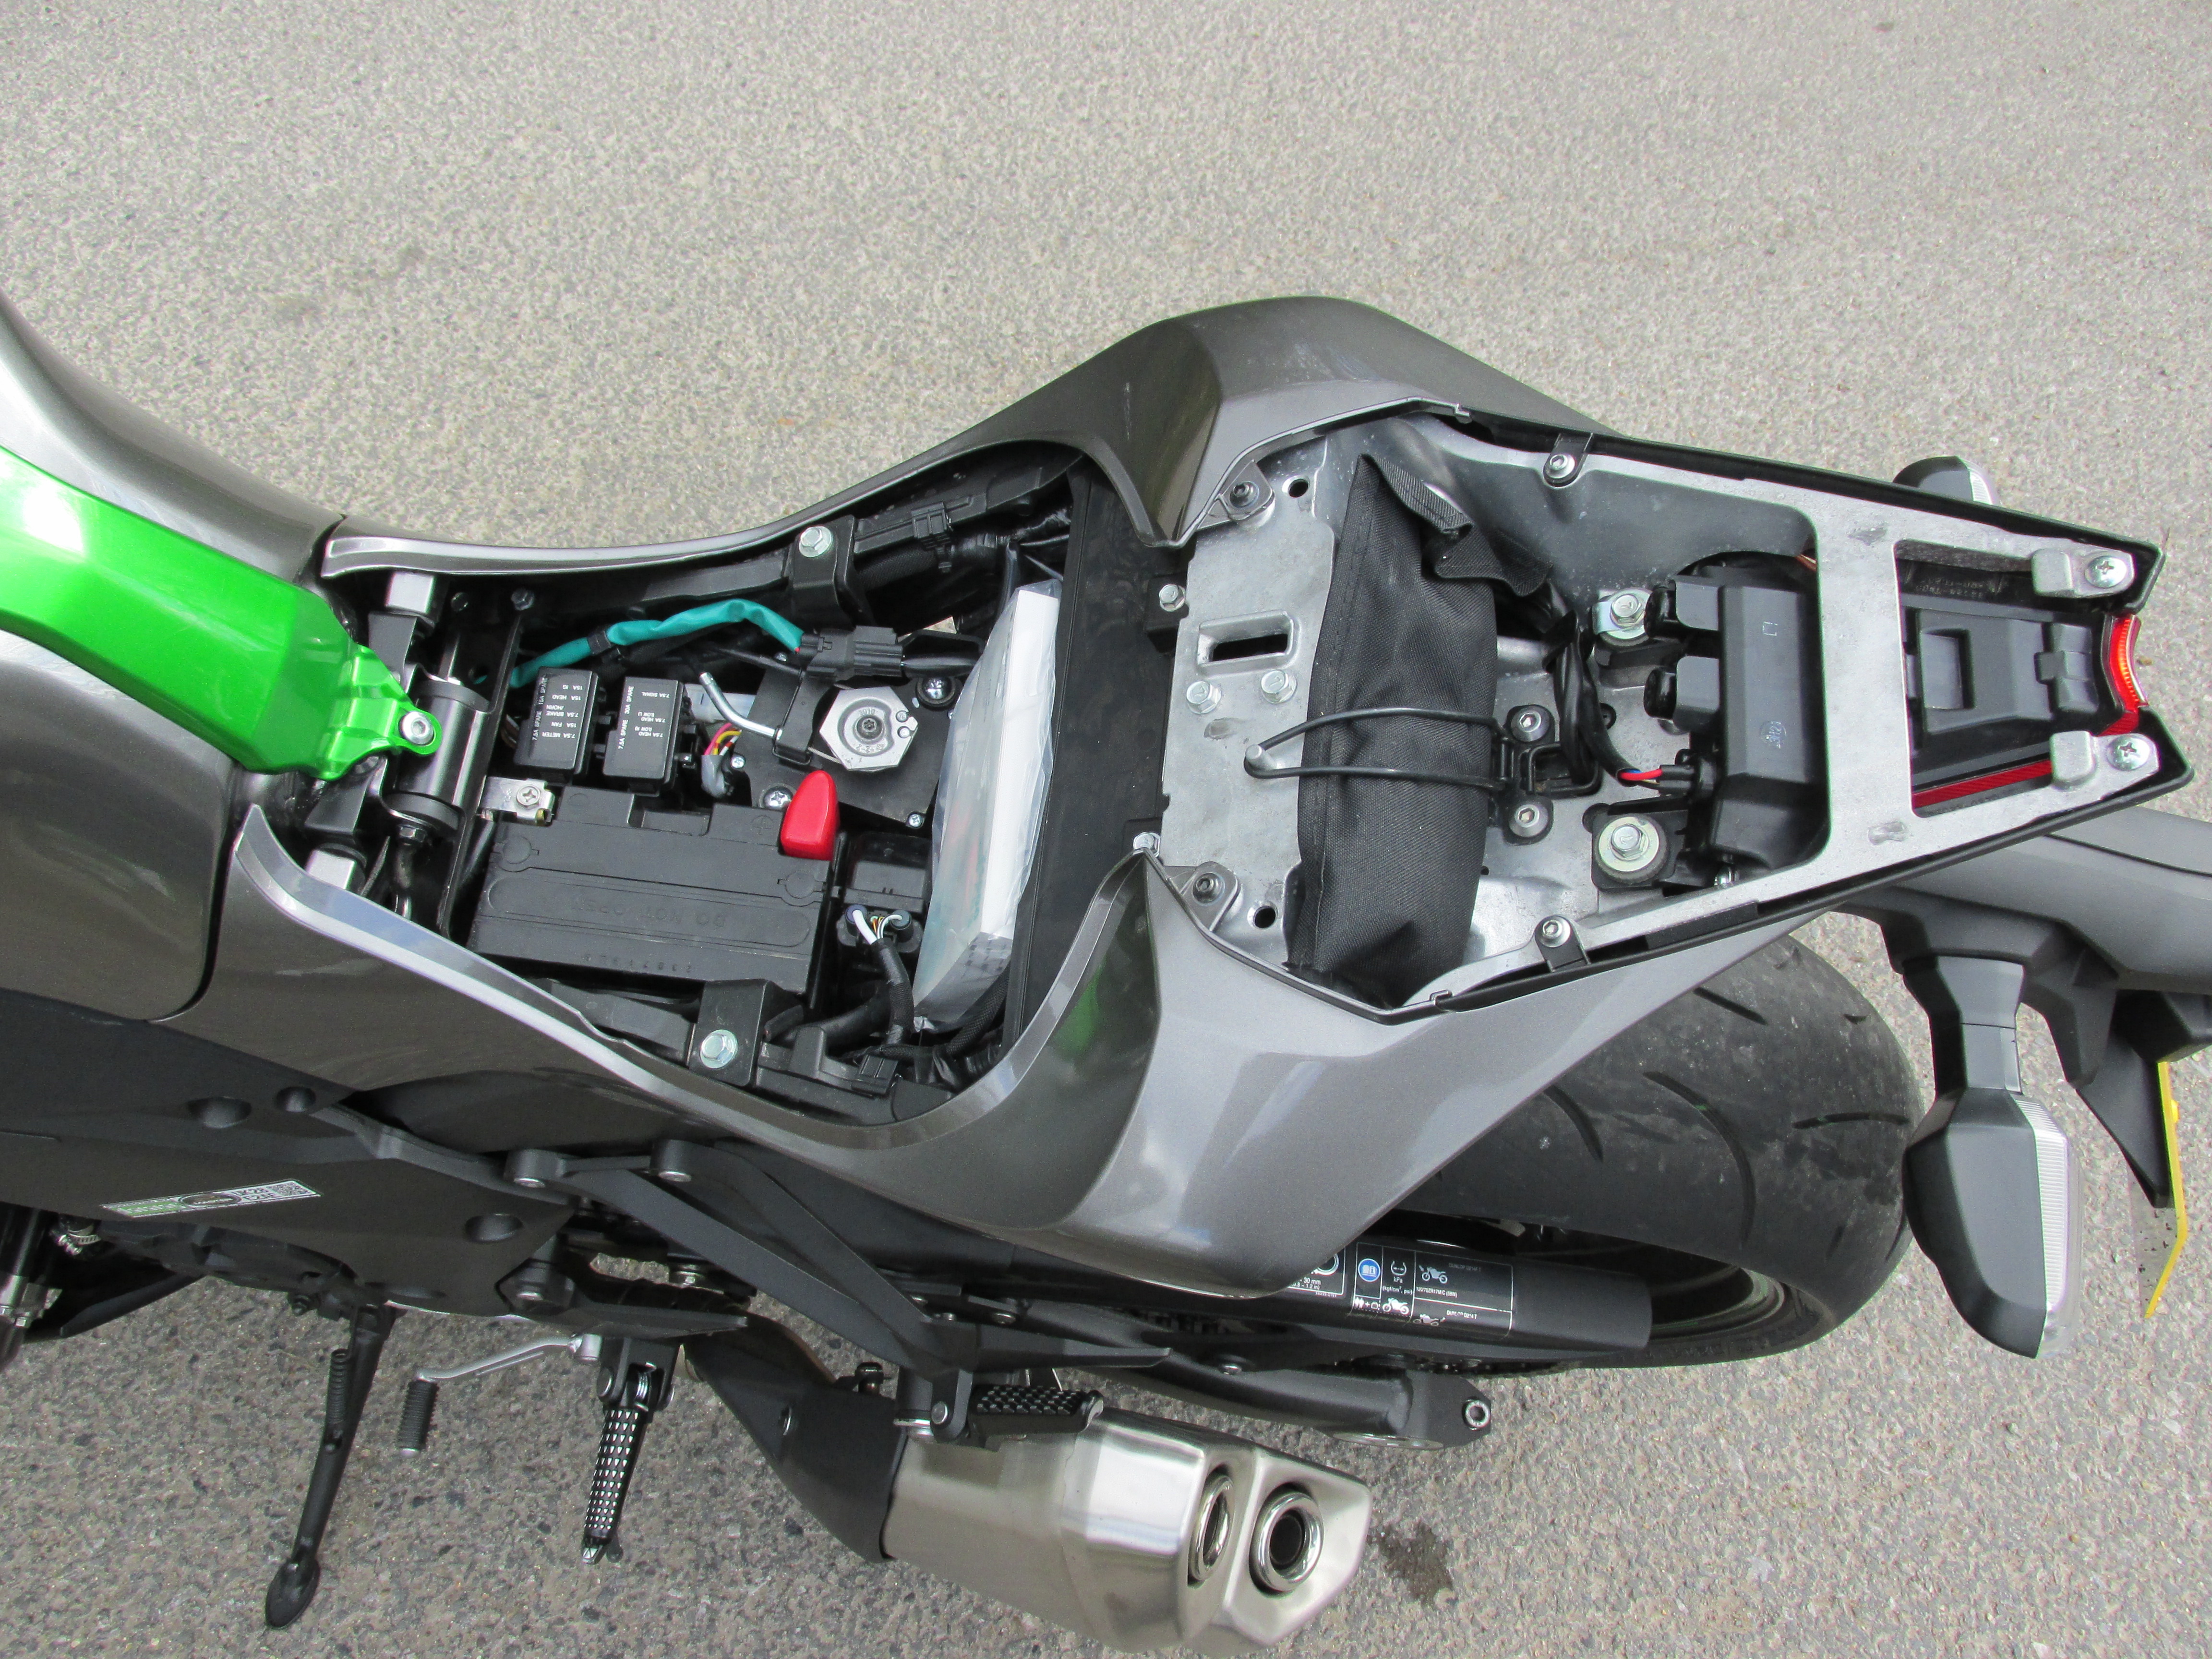 UK ride: 2014 Kawasaki Z1000 review